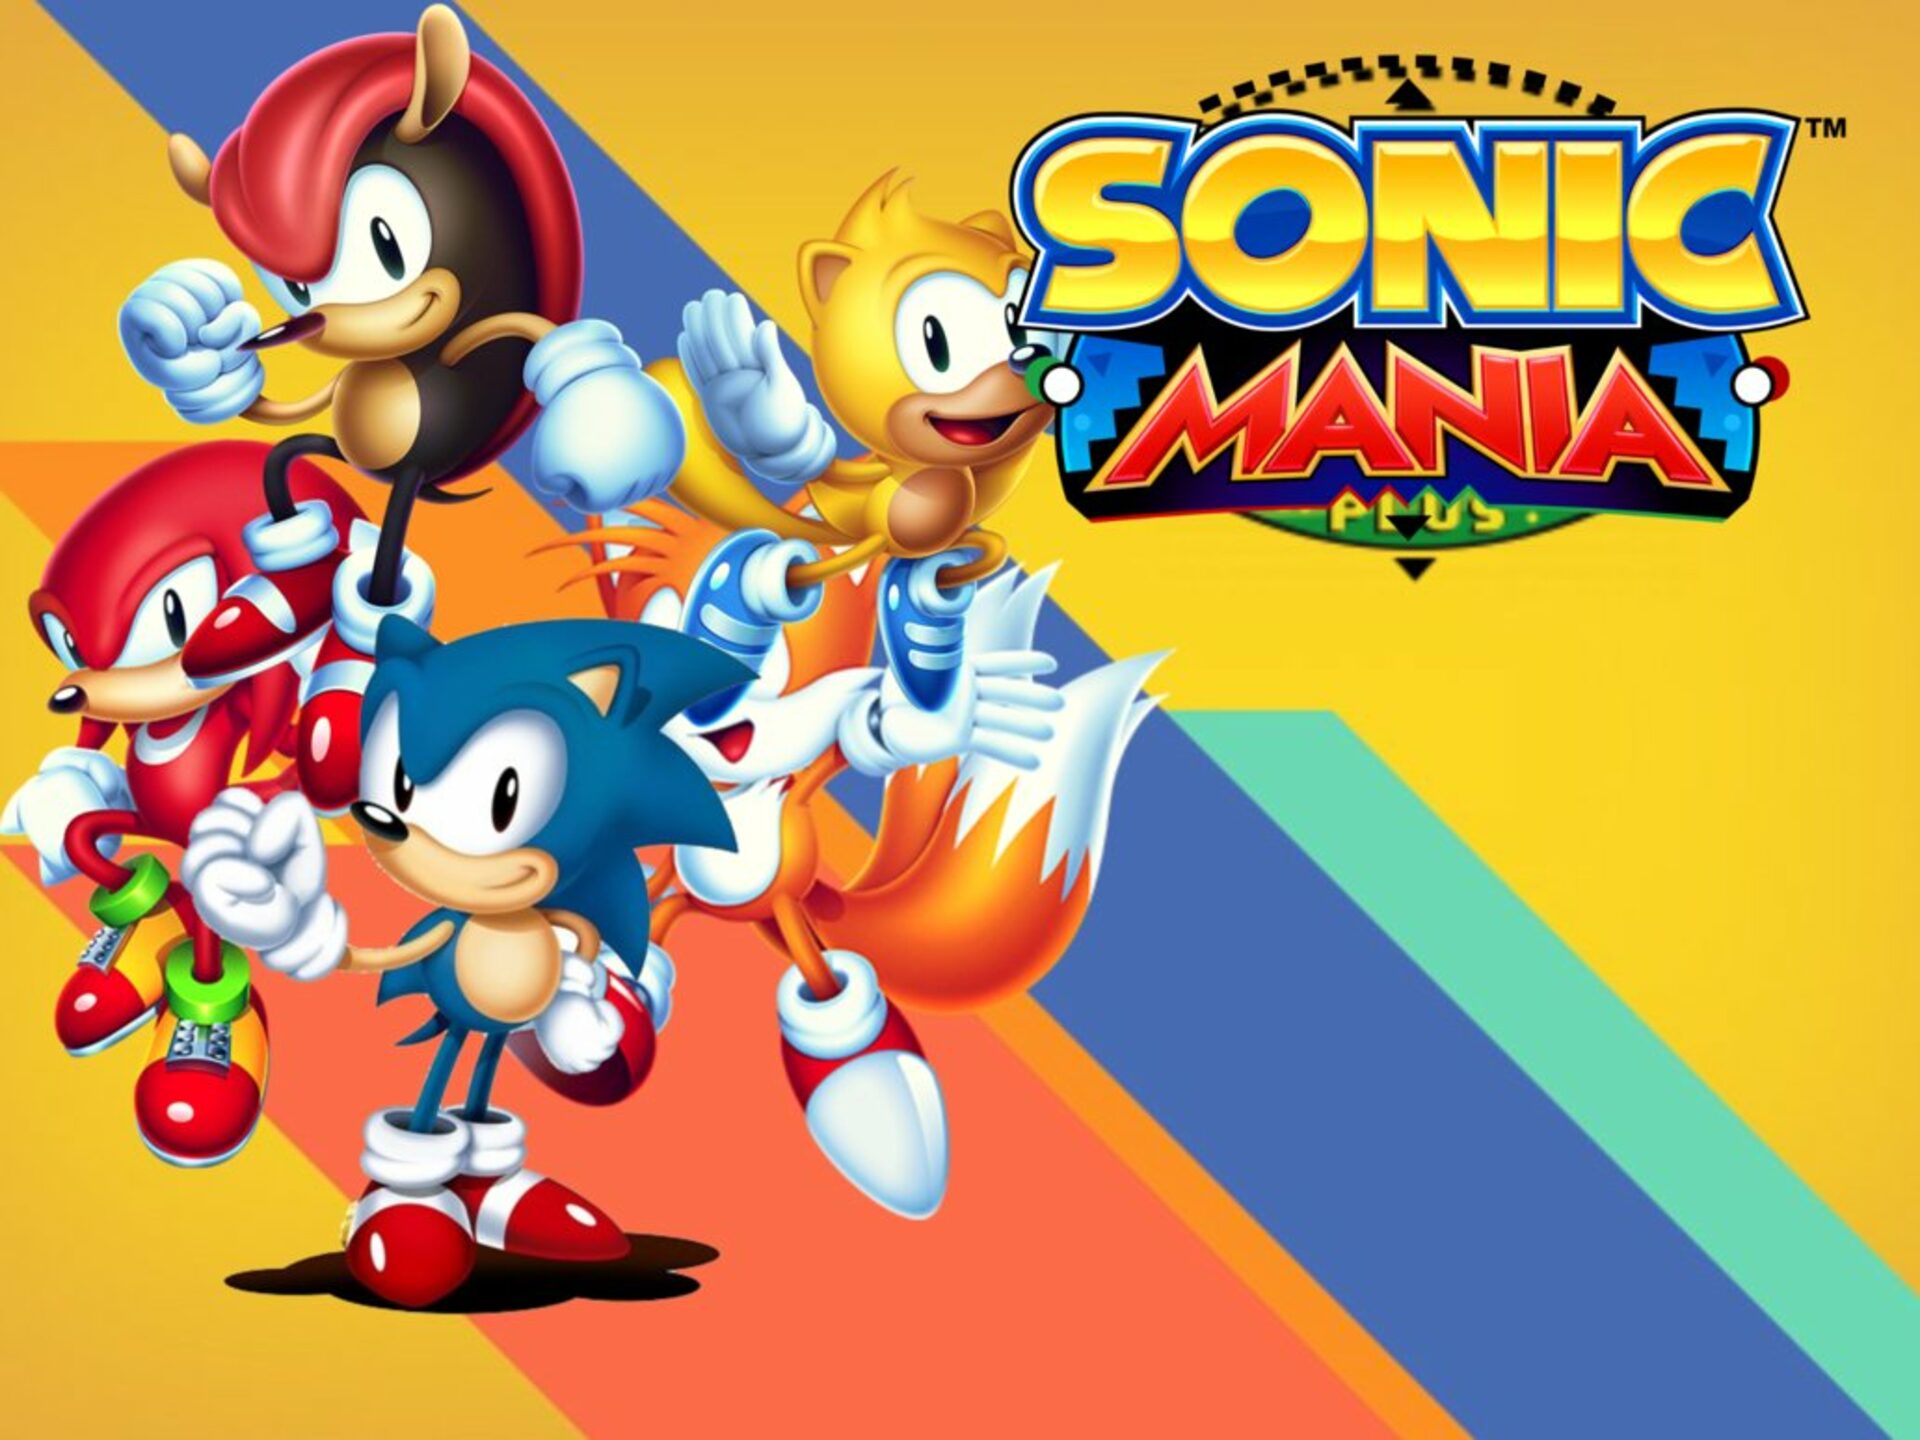 Sonic Mania Plus Mobile??? 